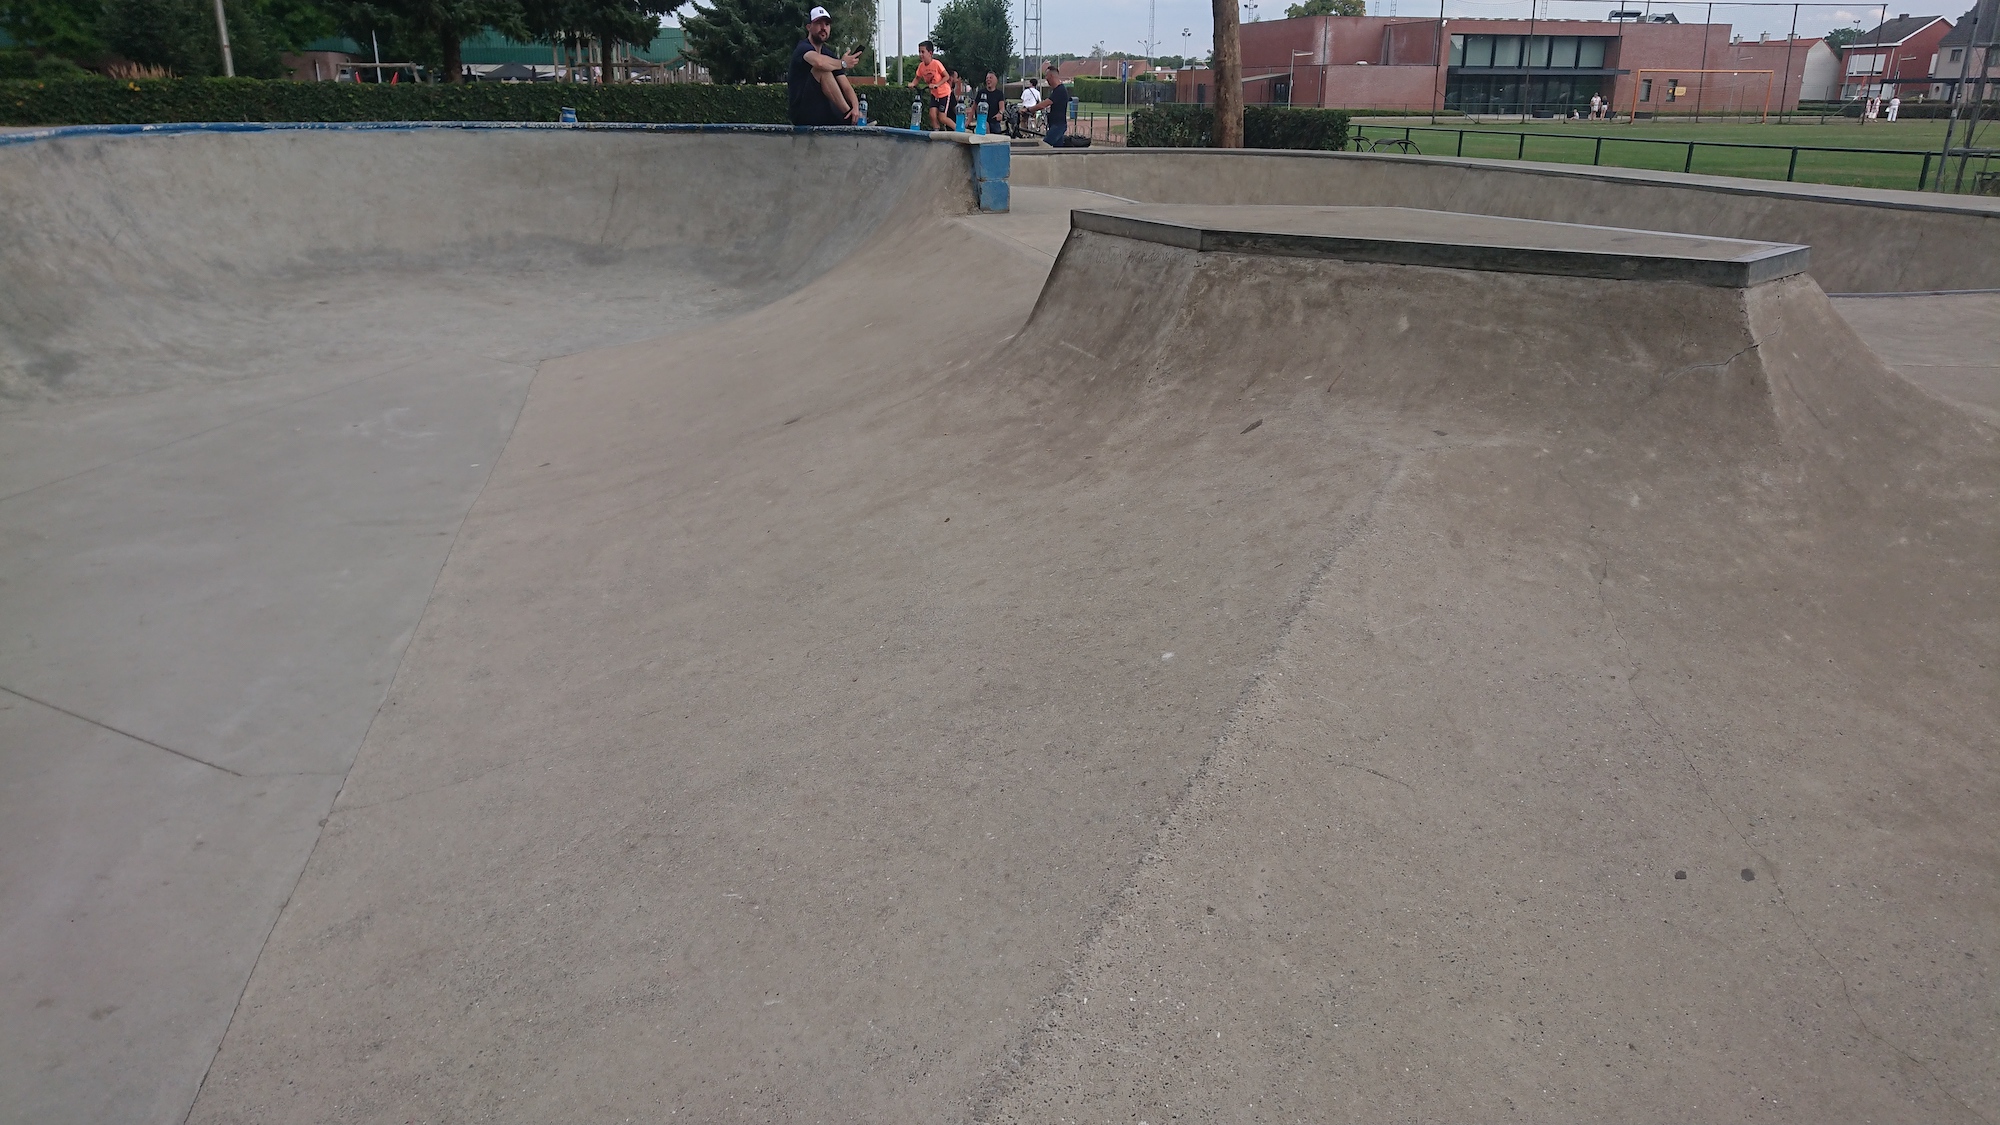 Vorselaar skatepark